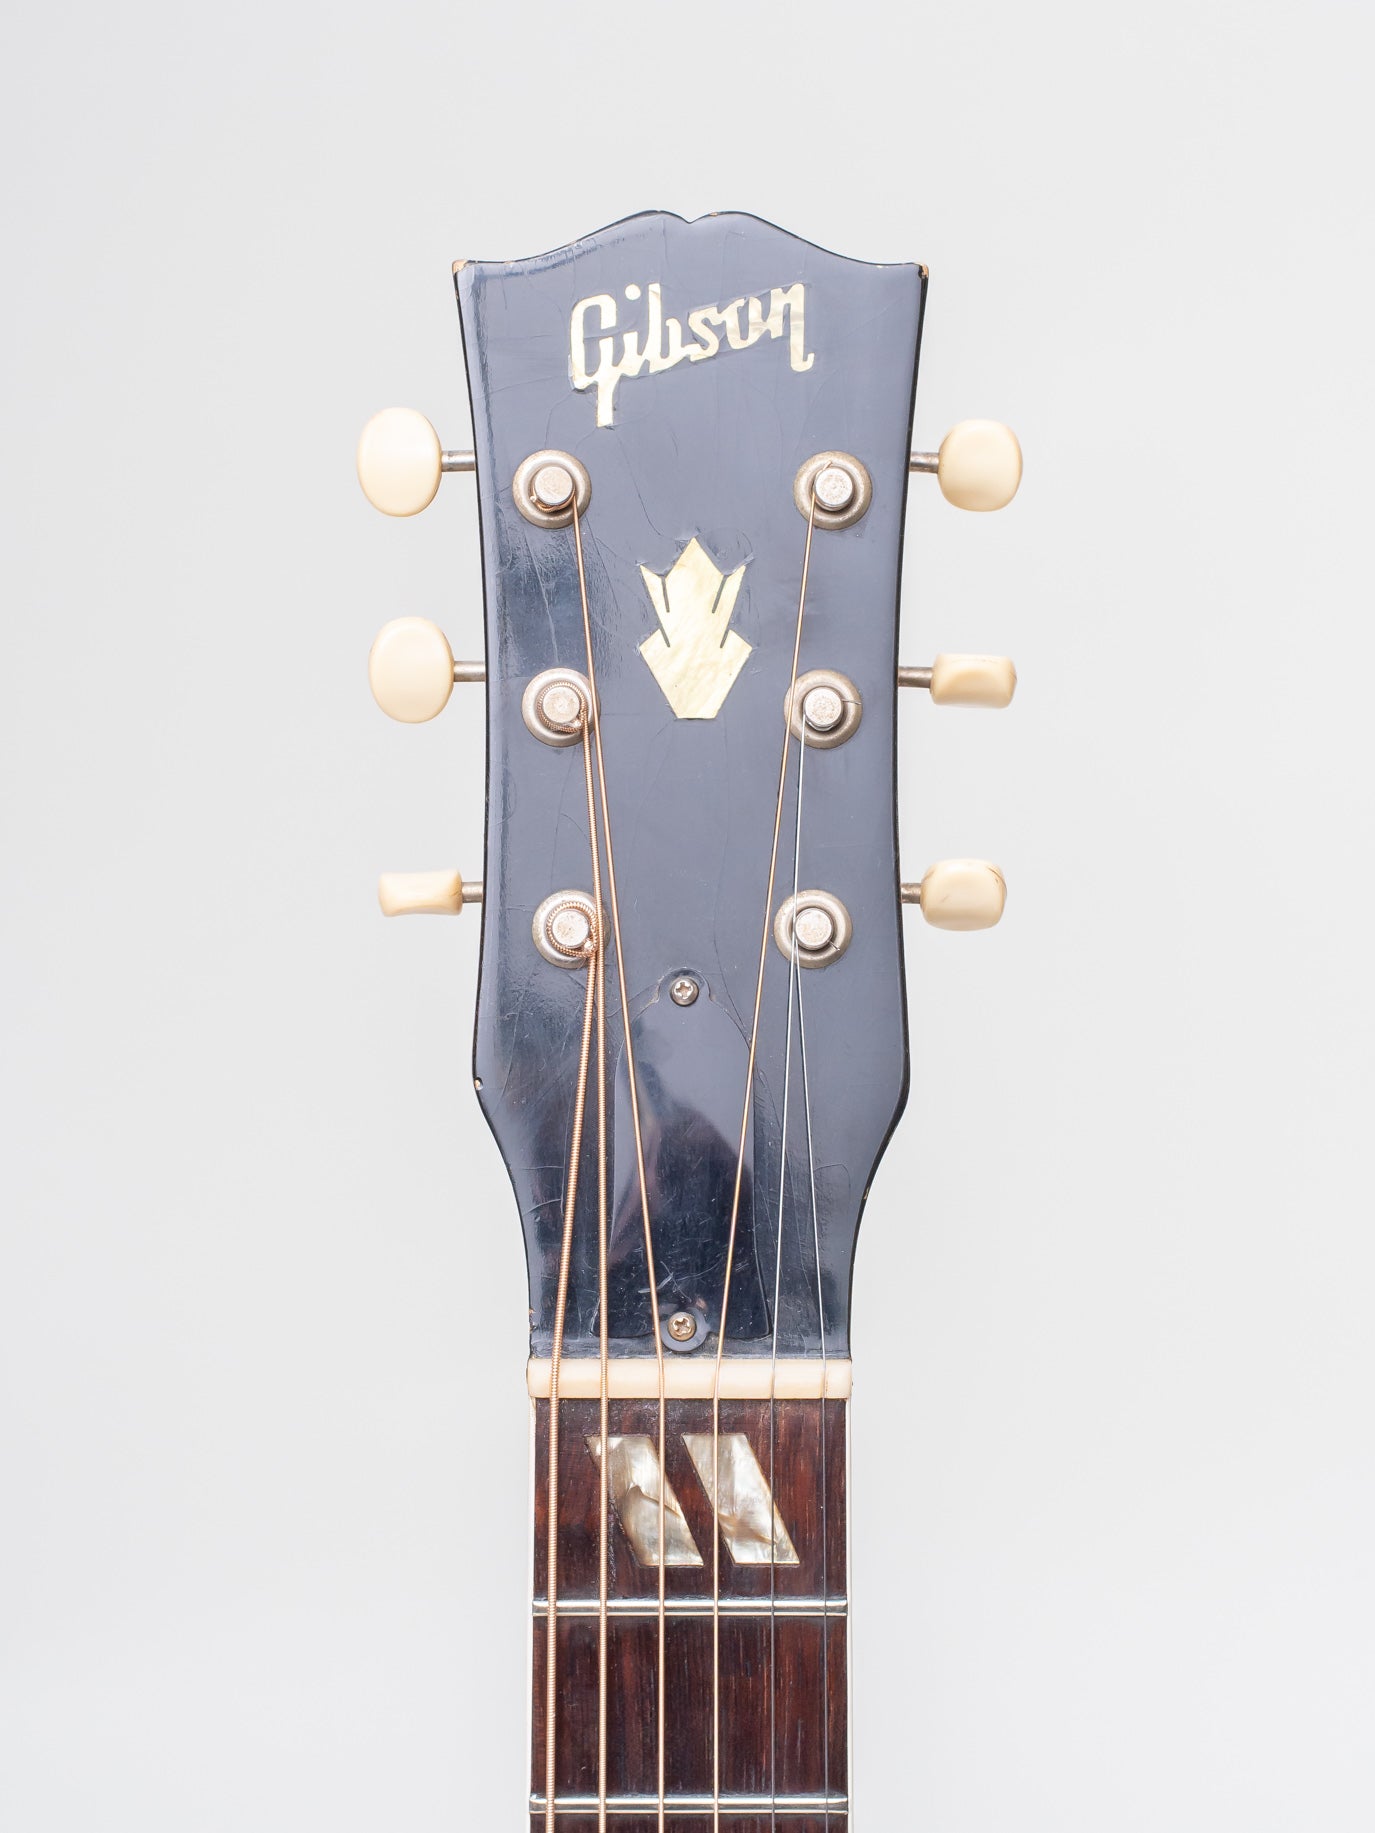 1964 Gibson Folk Singer Jumbo